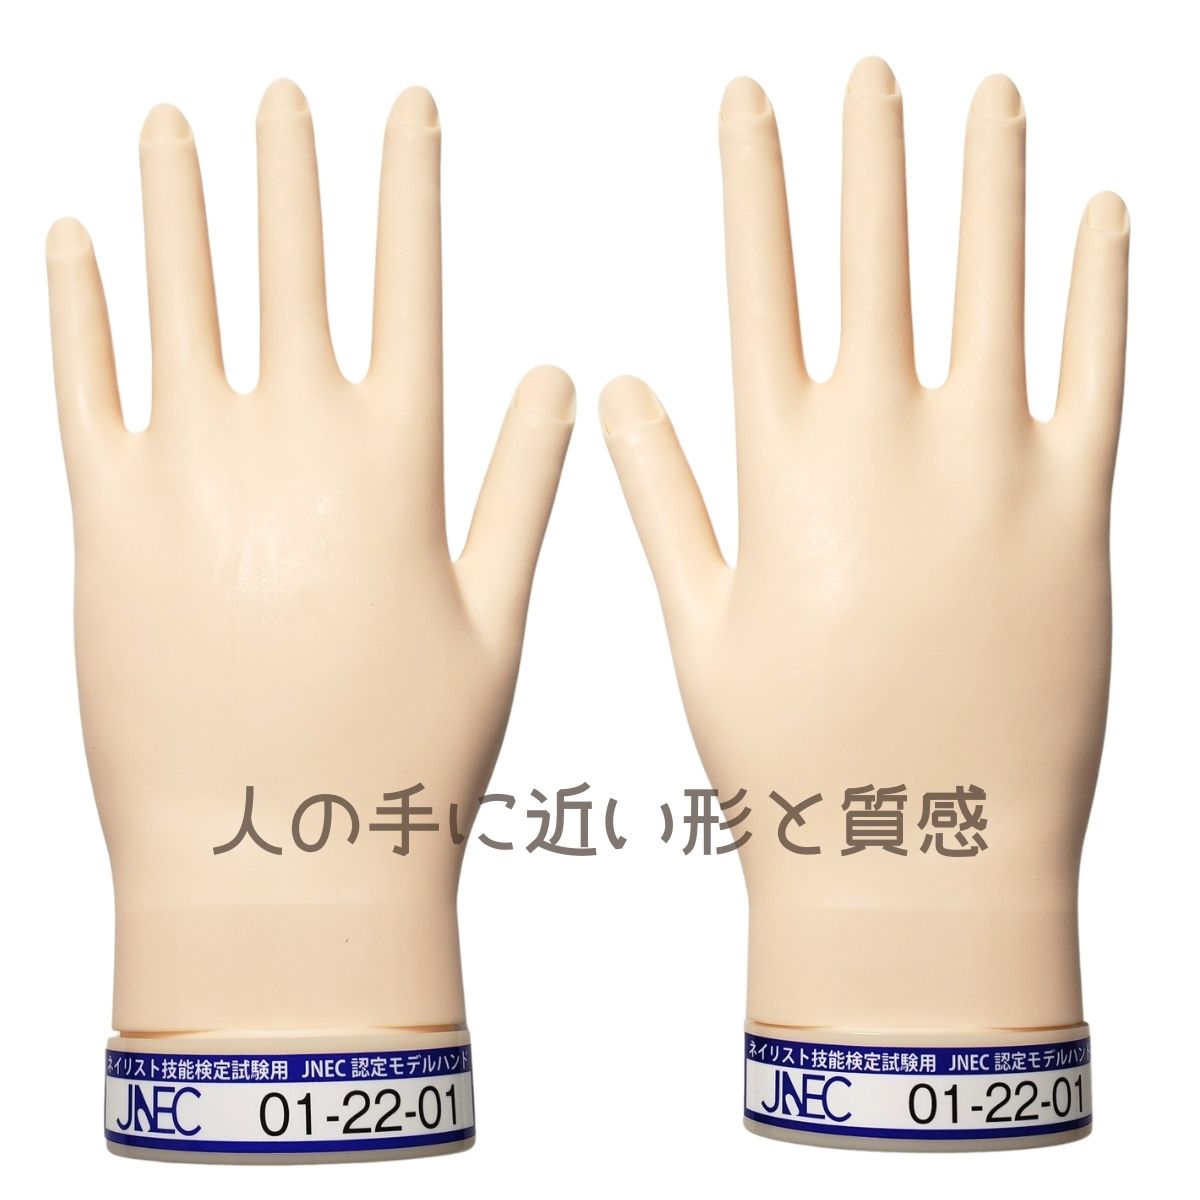 JNEC認定 滝川 STモデルハンド 右手 左手 両手セット 第1期認定モデル 